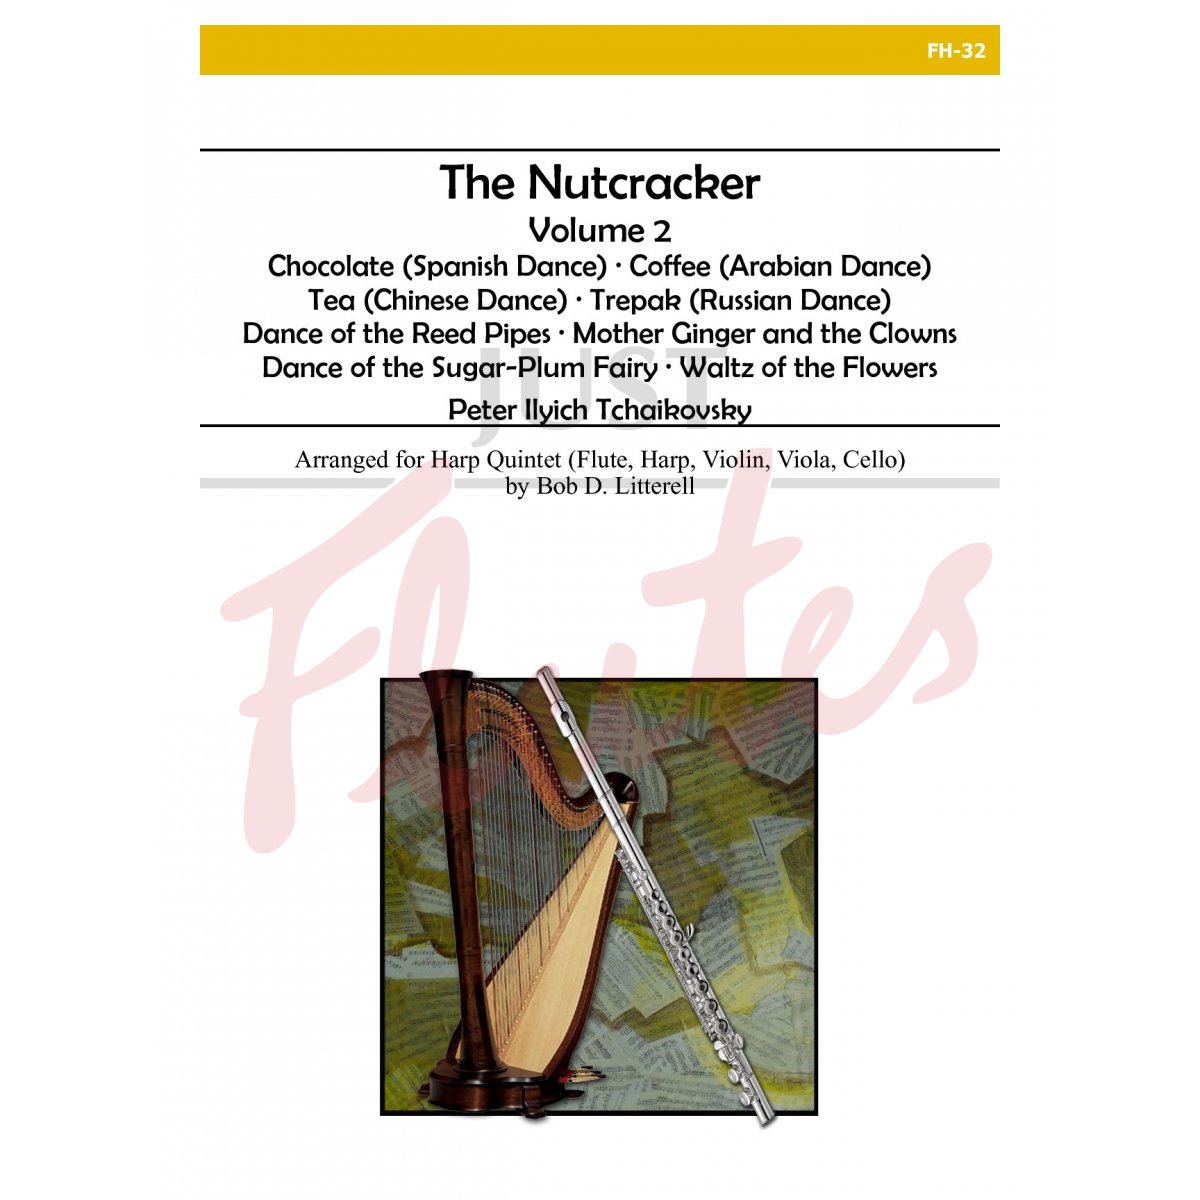 The Nutcracker, Volume 2 for Flute, Harp, Violin, Viola and Cello